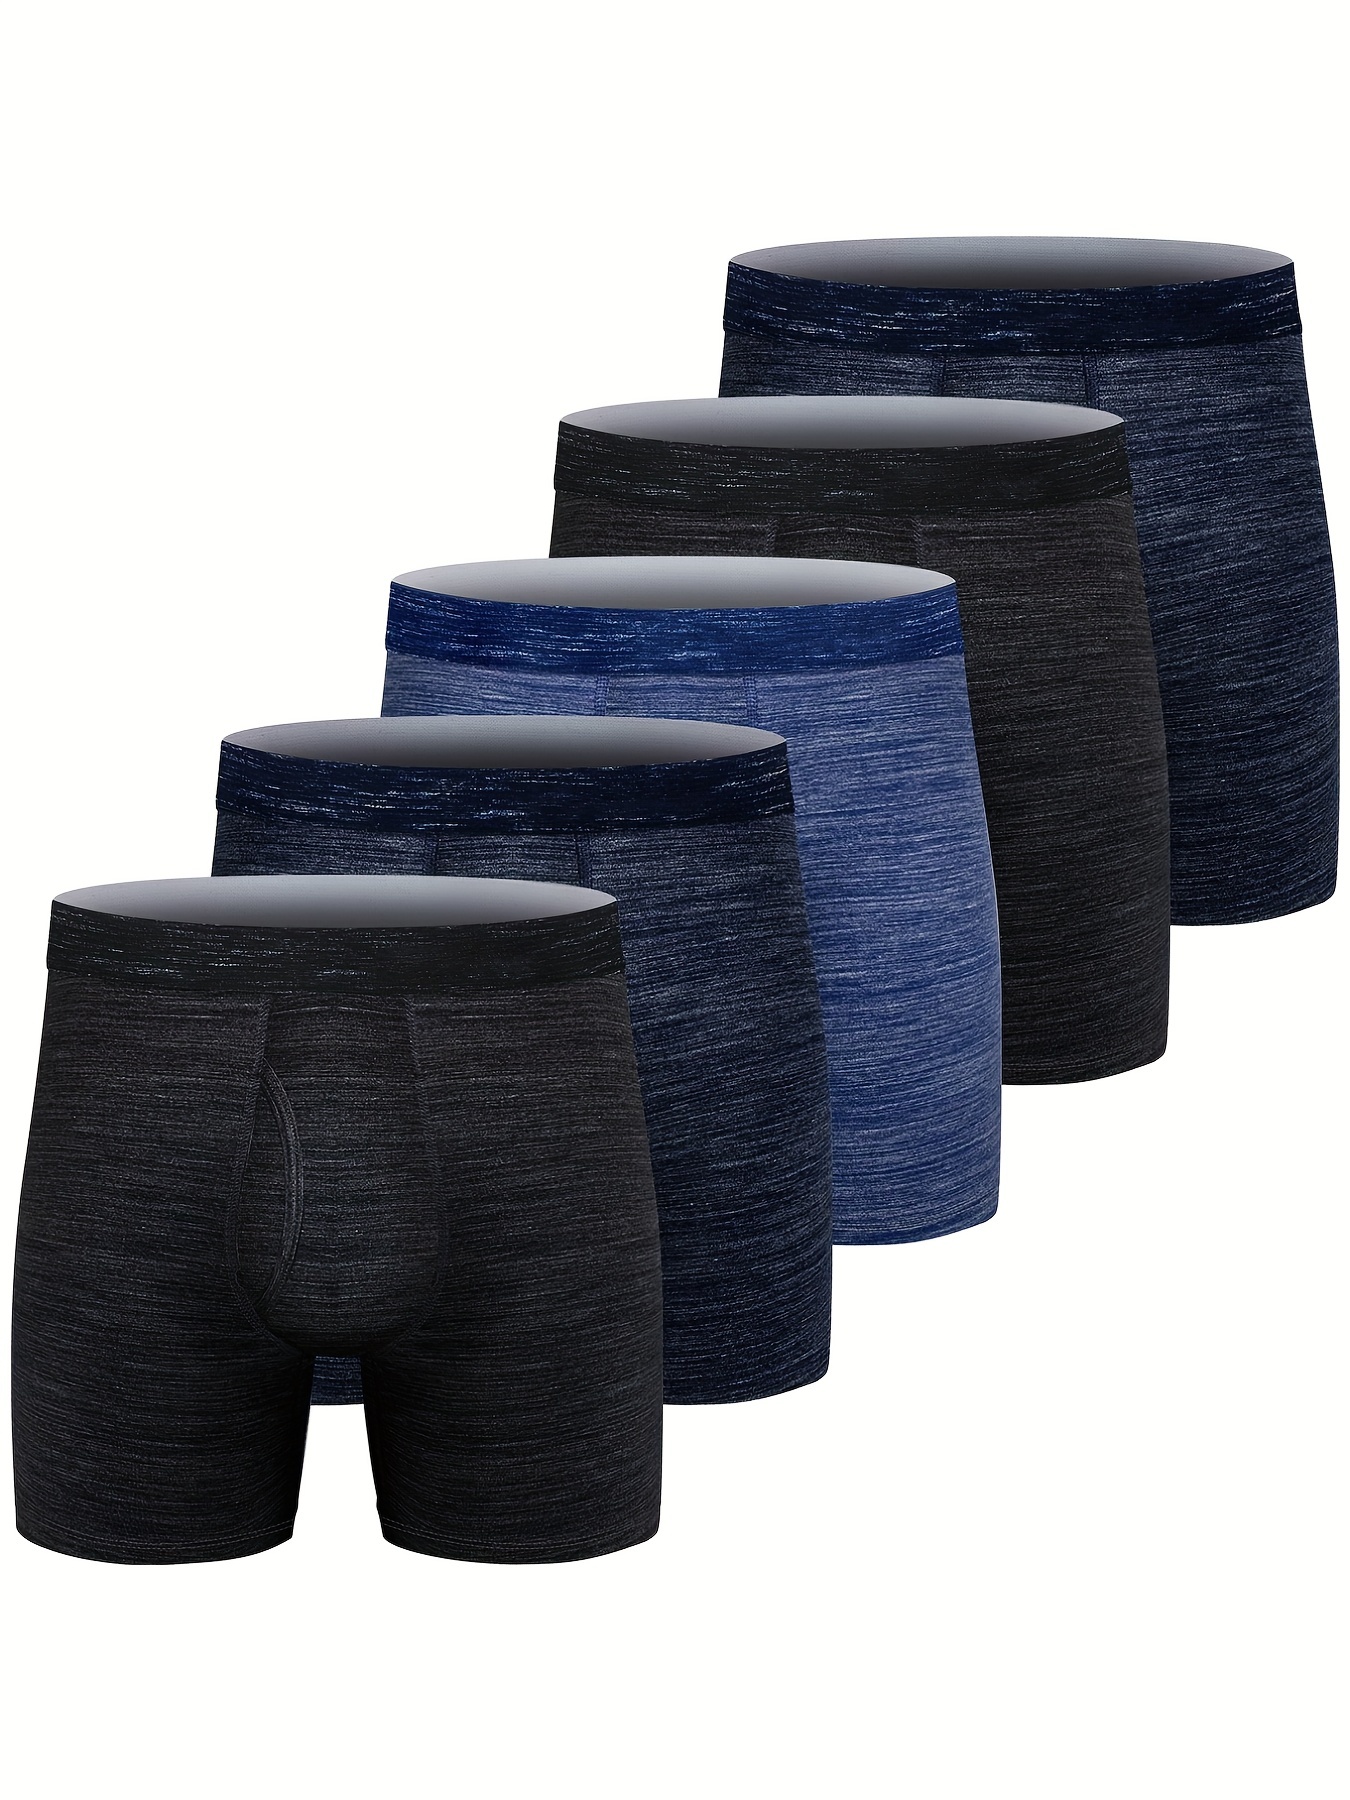 Fasion High Quality Bamboo Underwear Men XL XXL XXXL XXXXL